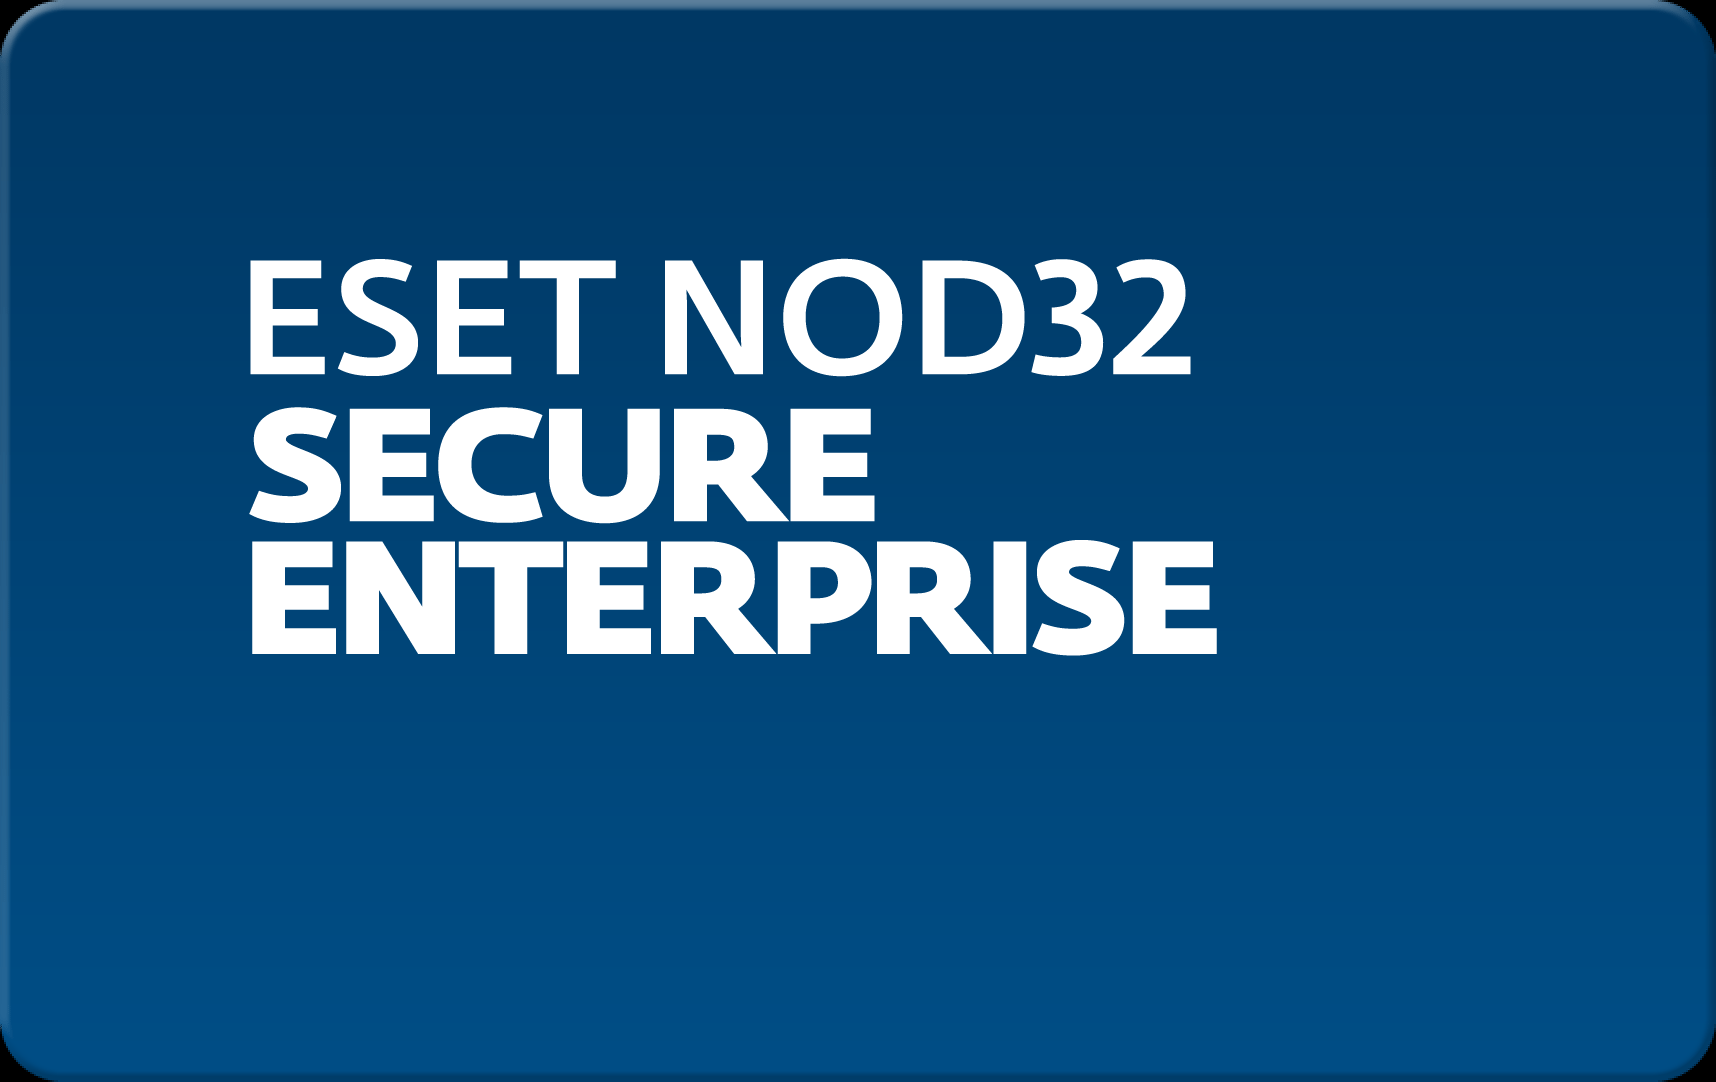        Eset NOD32 Secure Enterprise  155 